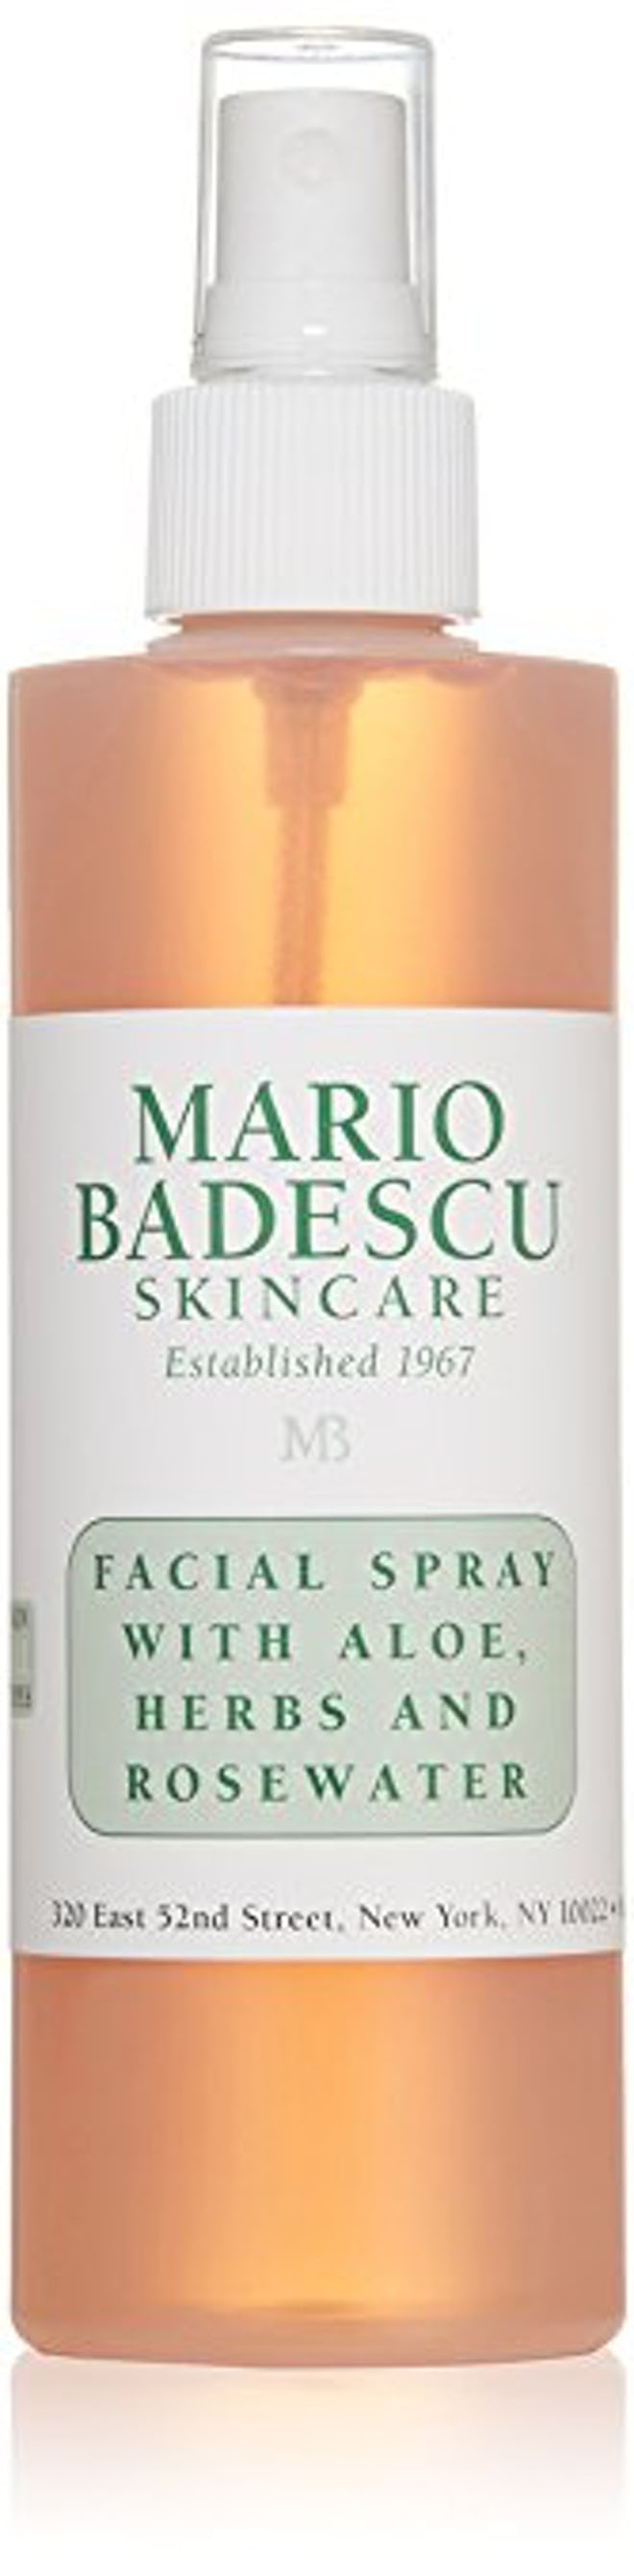 Mario Badescu Facial Spray With Aloe Herbs and Rosewater-2pk